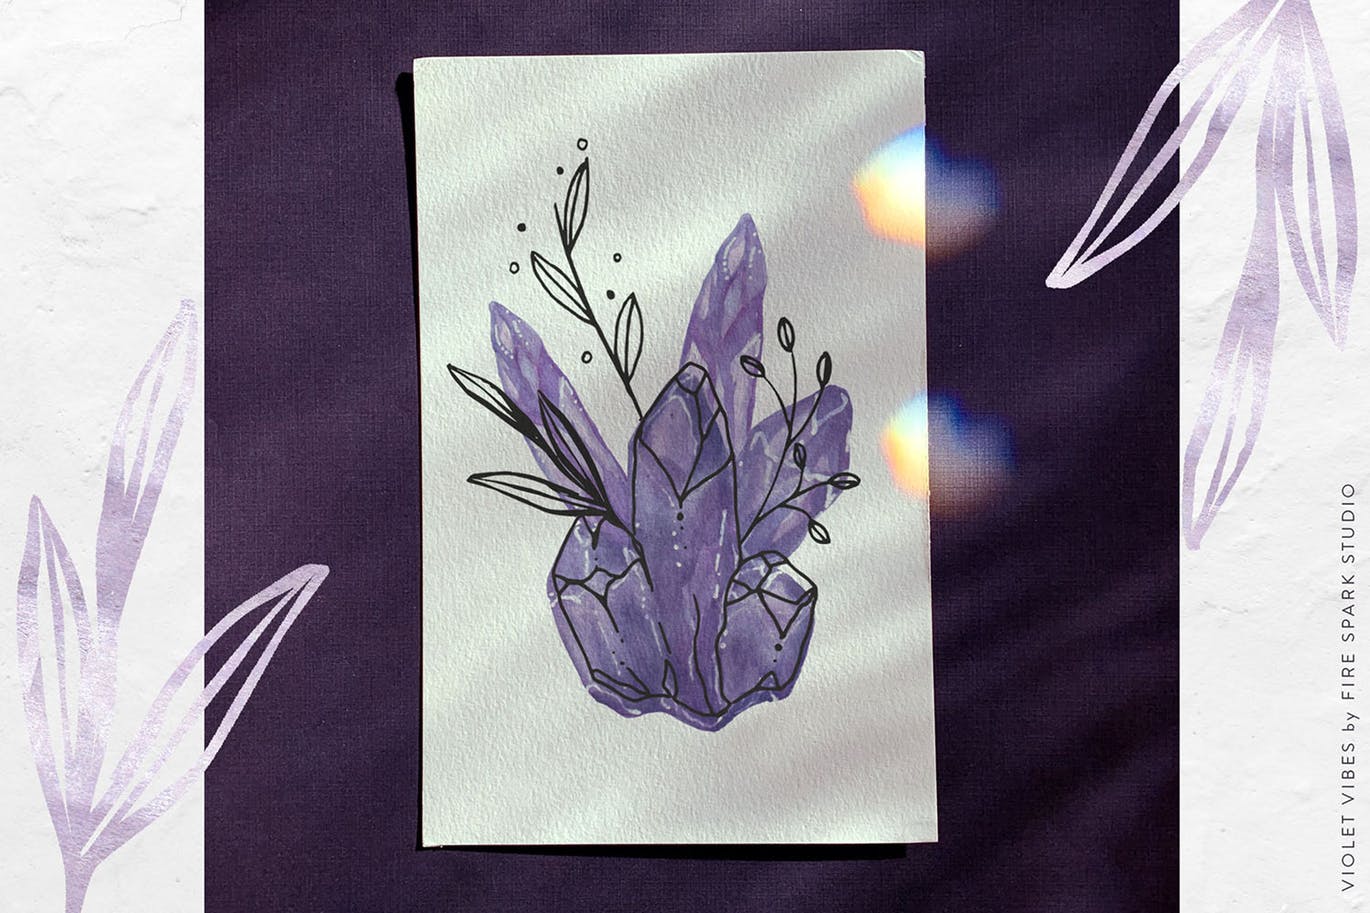 紫罗兰色时尚水彩手绘设计套件 Violet Vibes Graphic Art Kit插图(8)